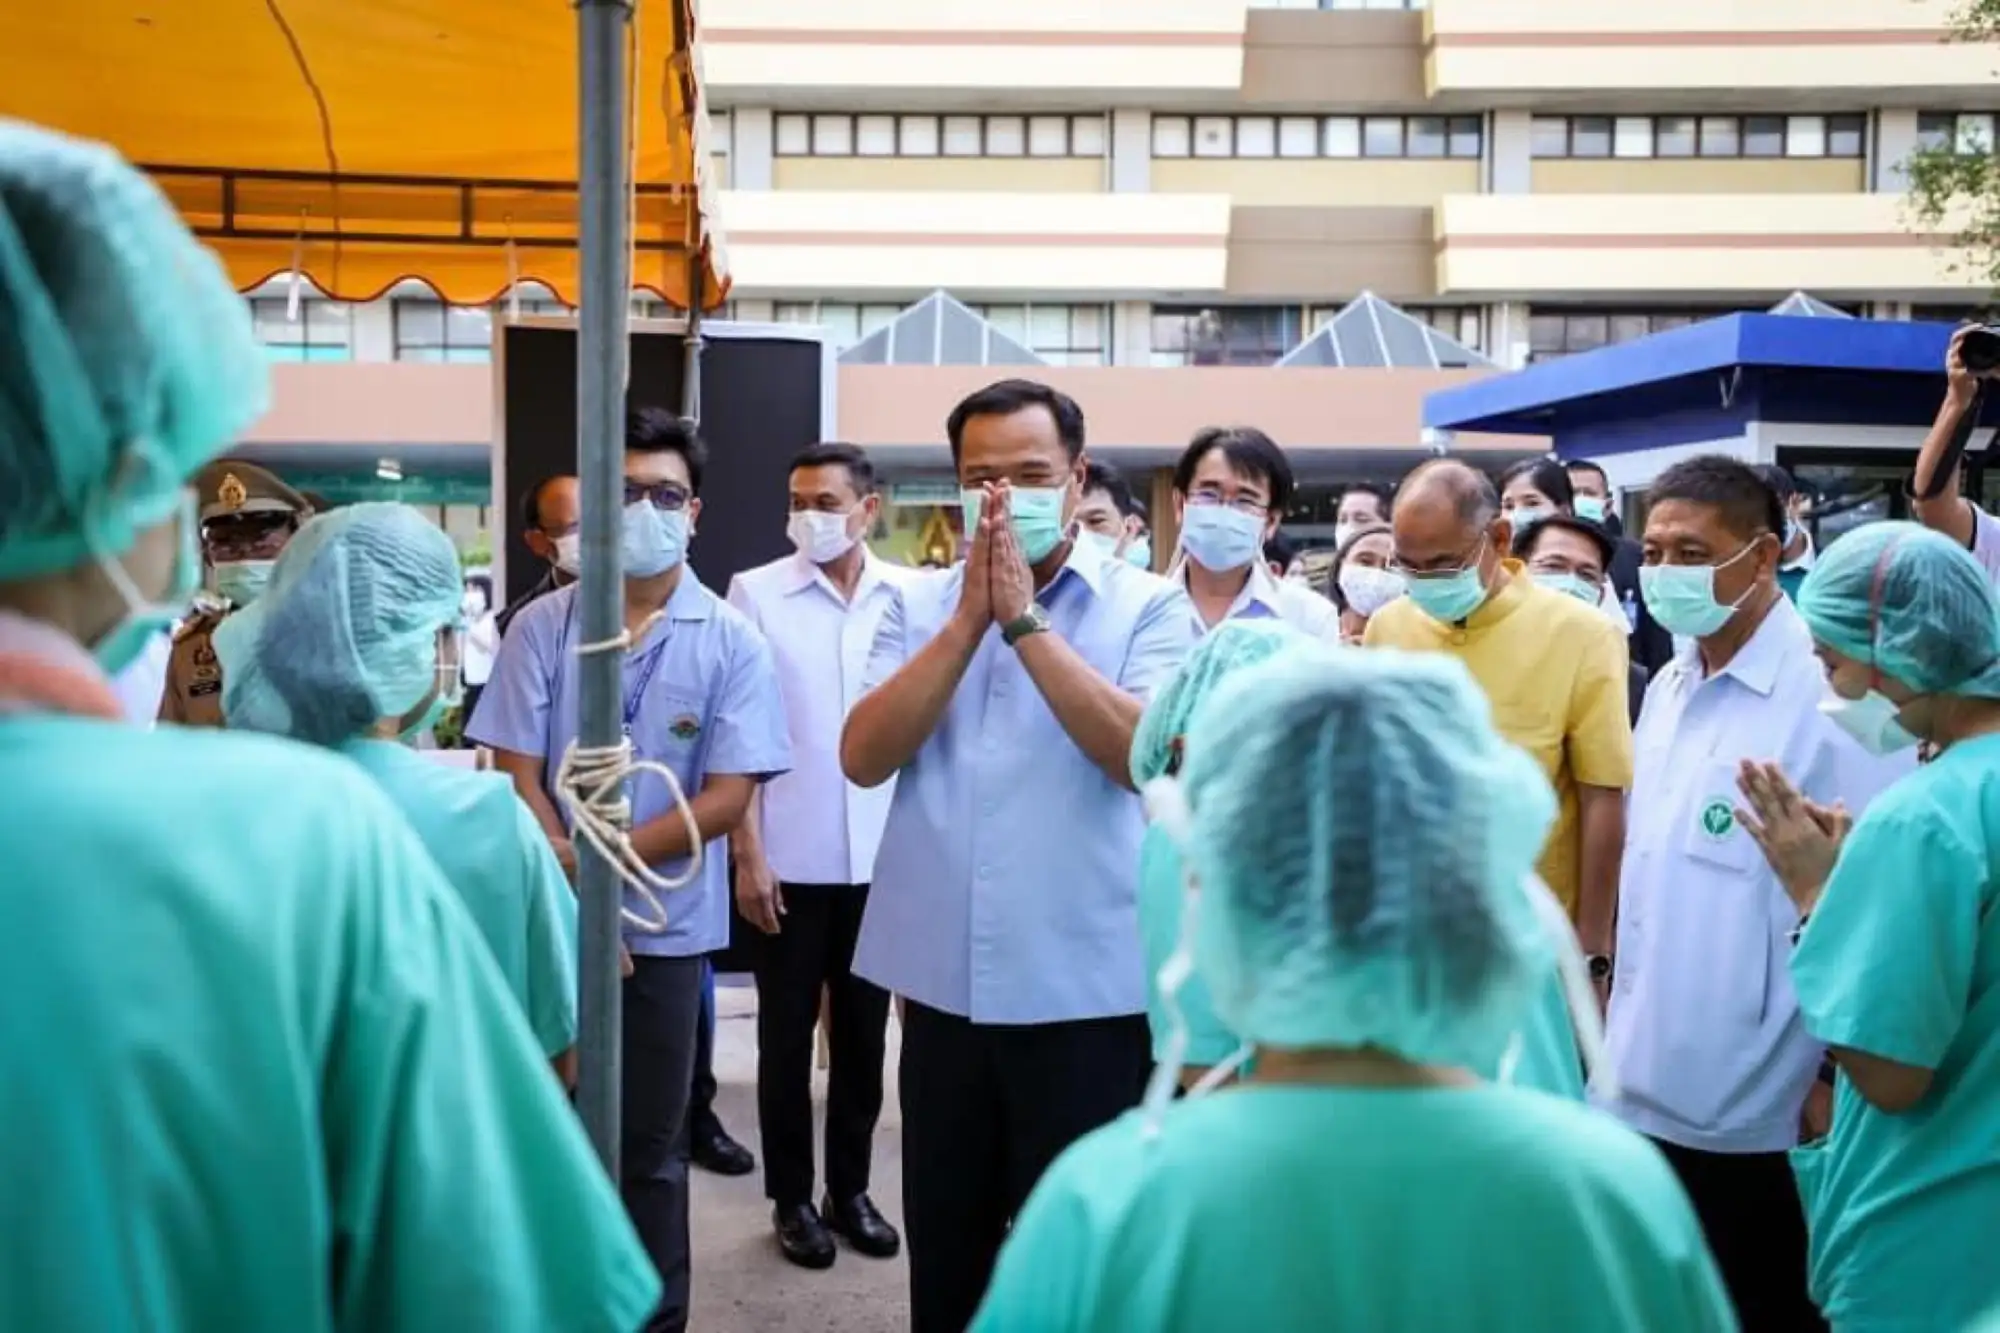 一文认识泰国卫生部长阿努廷 亿万富豪投身疫情前线指挥官（图片来源：@ACharnvirakul推特帐号）